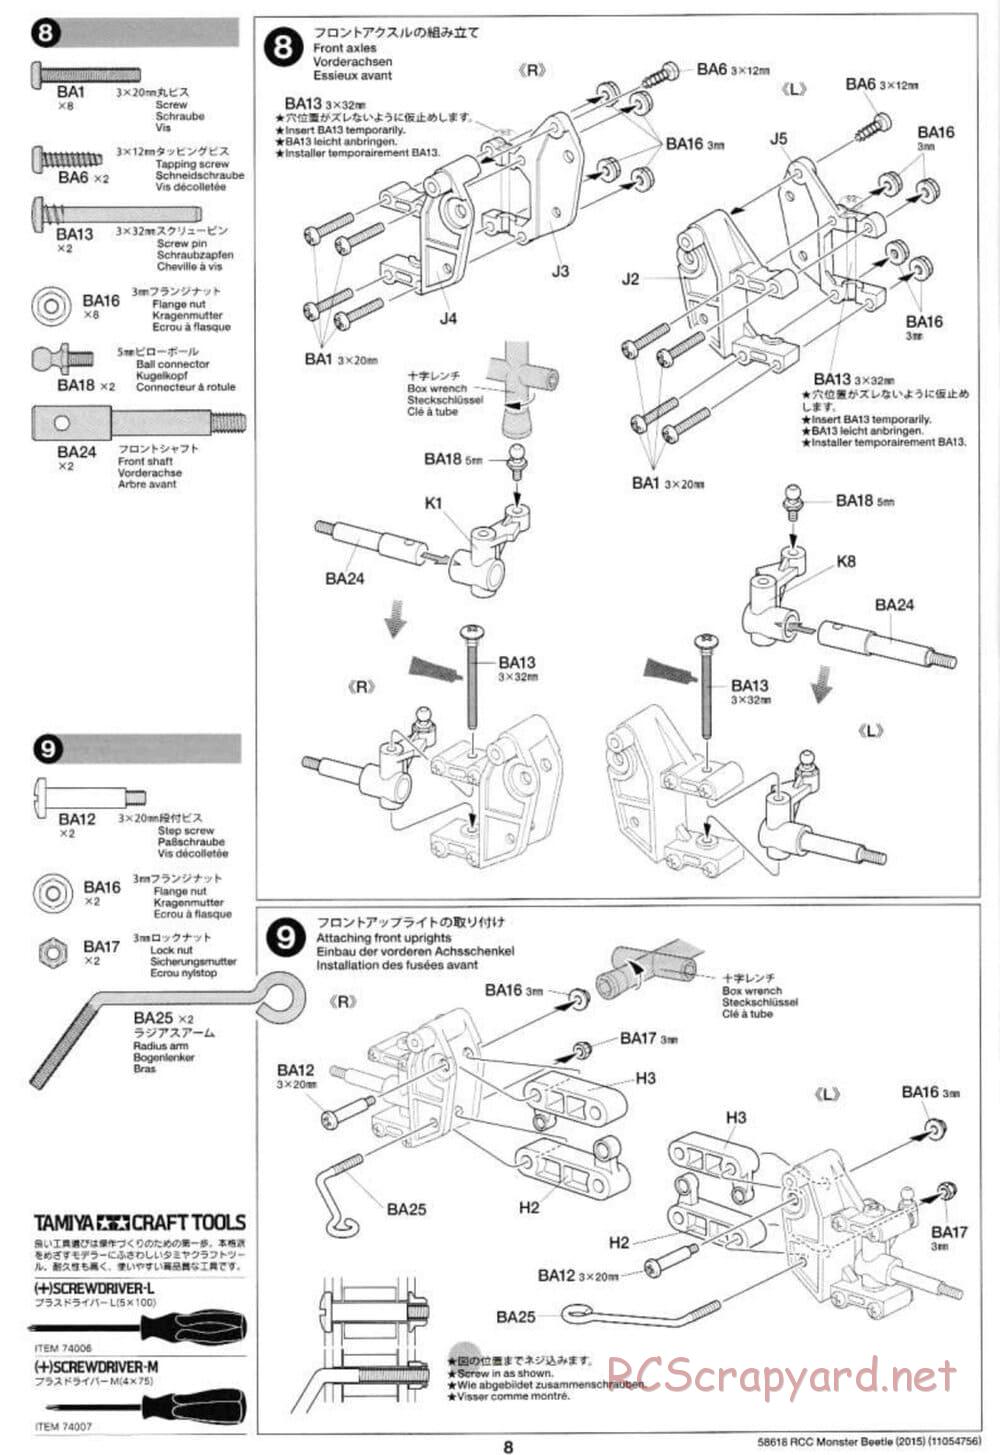 Tamiya - Monster Beetle 2015 - ORV Chassis - Manual - Page 8